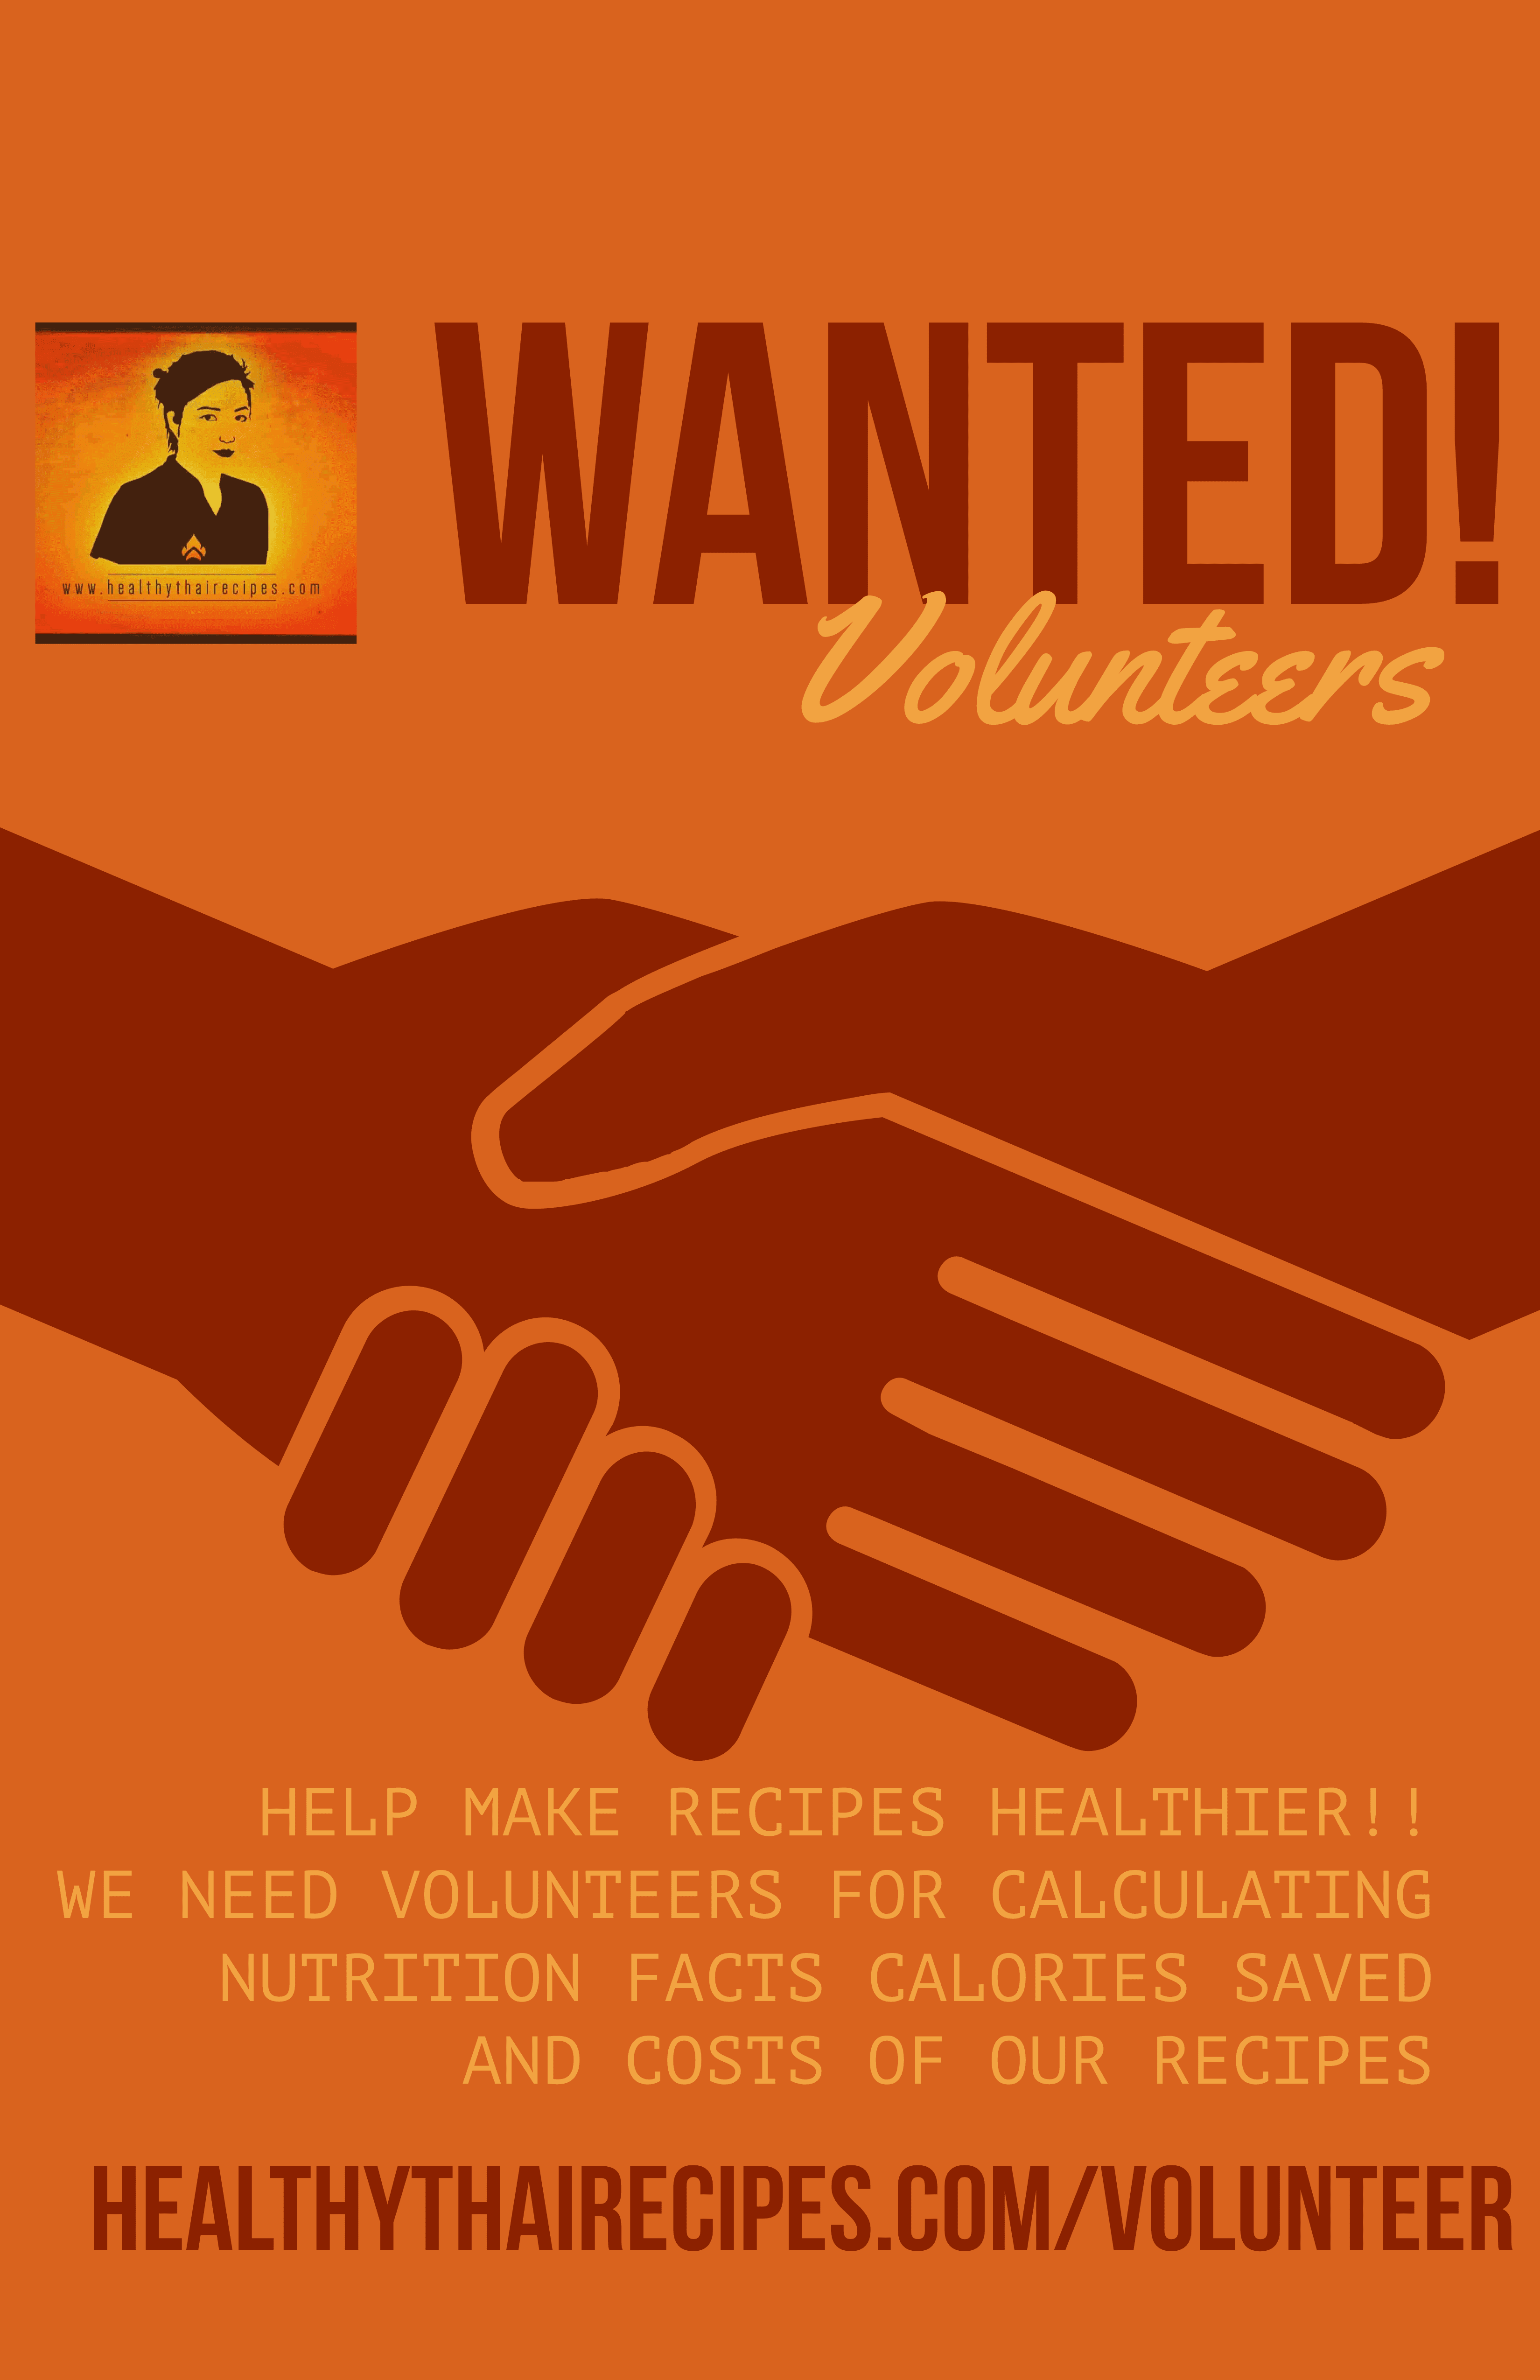 Volunteer for Healthythairecioes.com